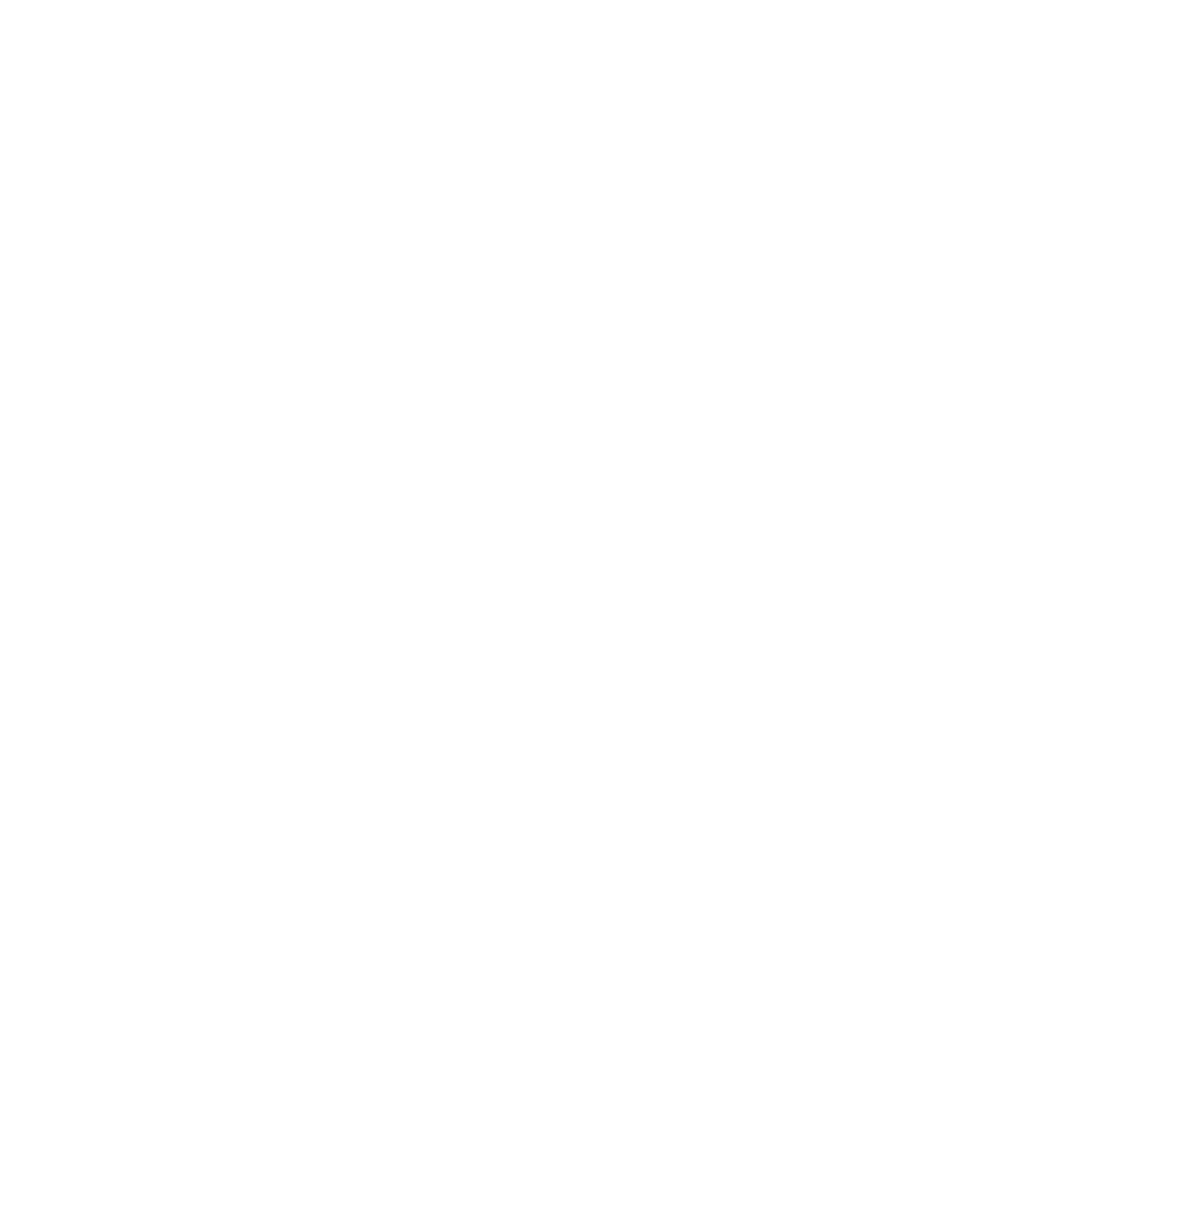 YakultGlobal 半世紀で海外39の国と地域に広がった国際事業の今とこれからに向けた挑戦